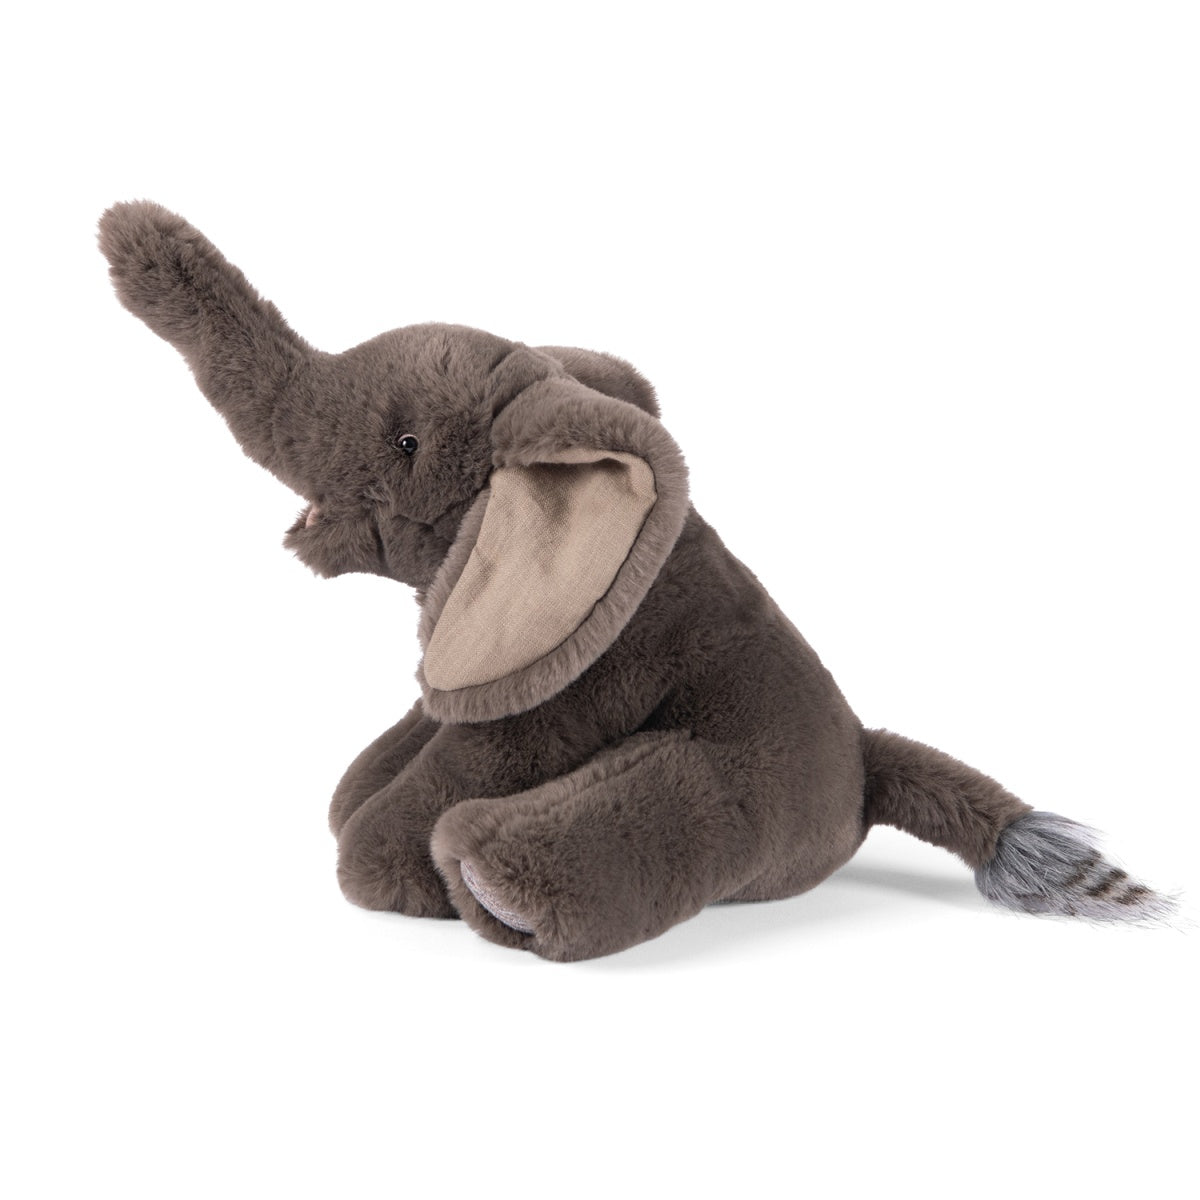 MOULIN ROTY Kuscheltier kleiner Elefant. In der zauberhaften Serie "rund um die Welt" zeigt Moulin Roty bedrohte Tierarten. Die Tiere sind liebevoll gefertigt aus hochwertigen Stoffen. Der kleine Fusselschwanz des Elefanten ist so ein süßes Detail.